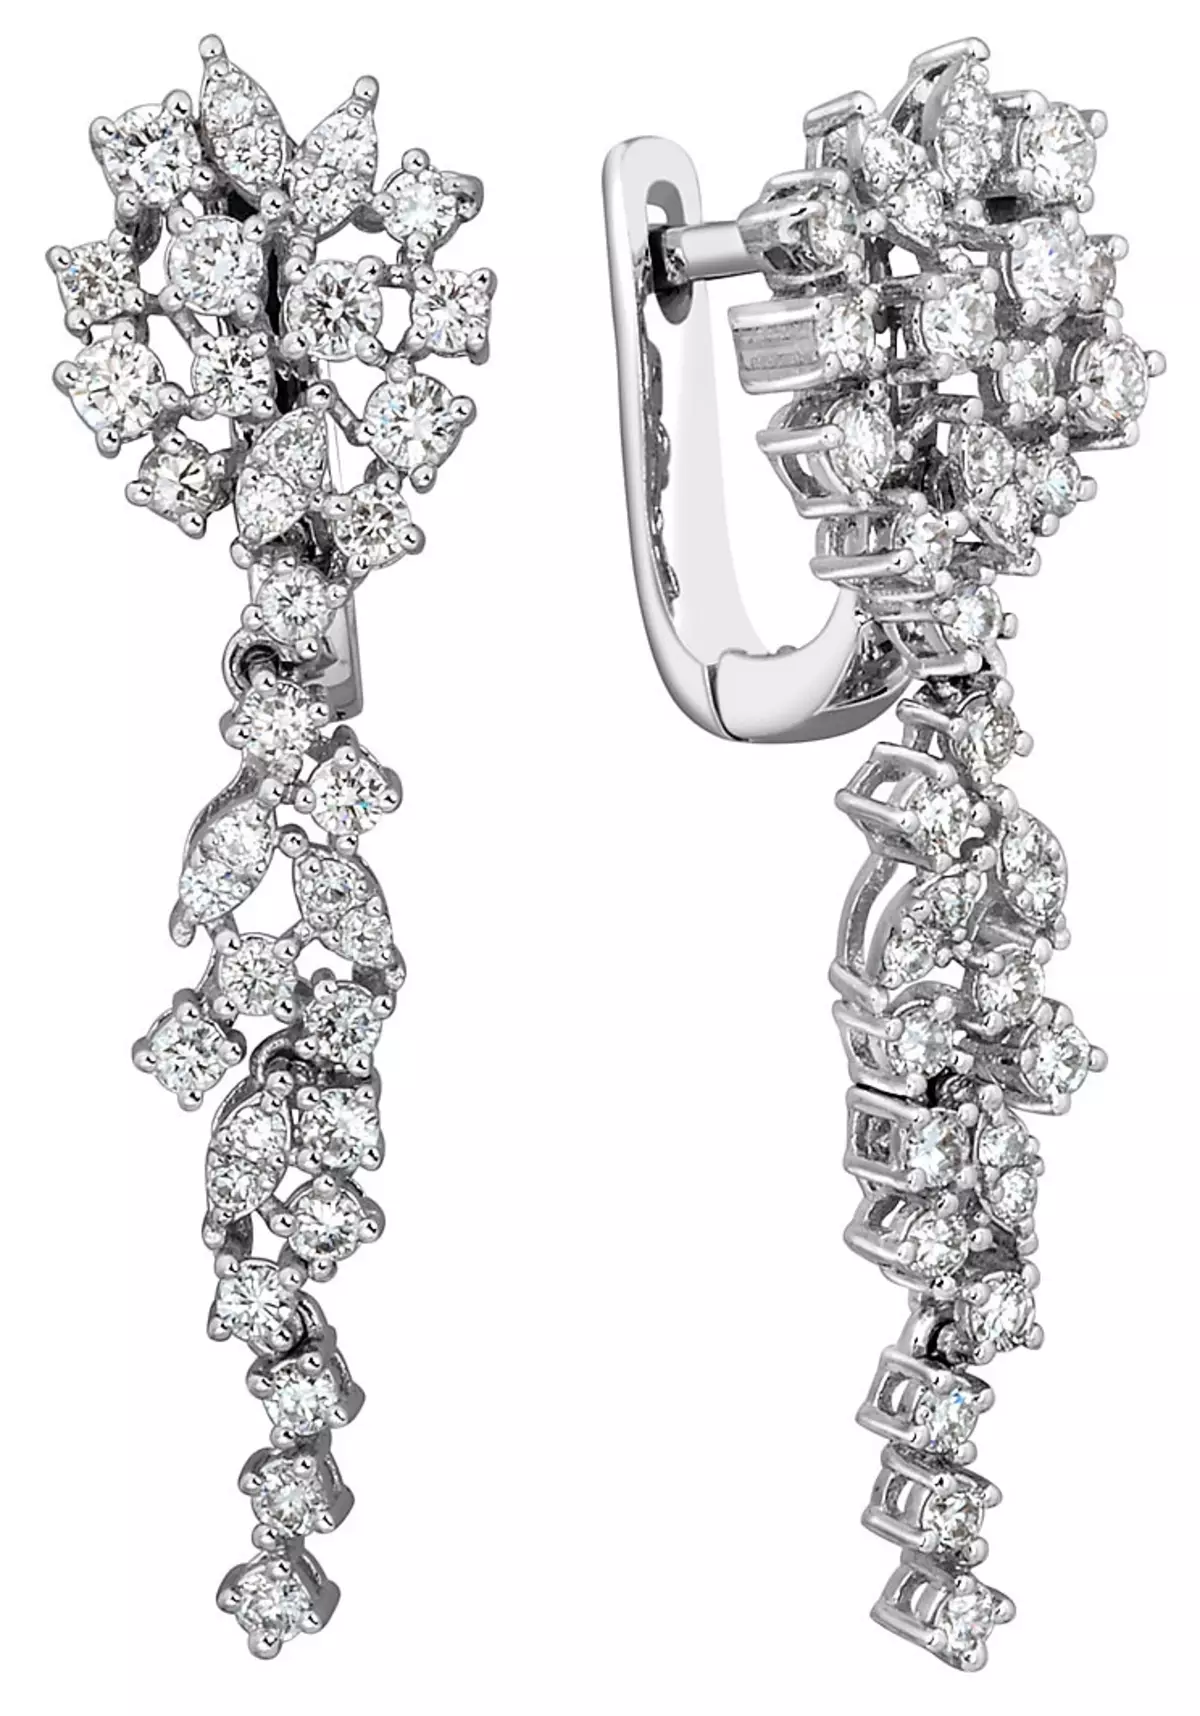 સફેદ સોનું earrings (85 ફોટા): નીલમ સાથે મોડેલ્સ, earrings મોતી સાથે અને પત્થરો વગર દબાણ કરે છે 3431_25